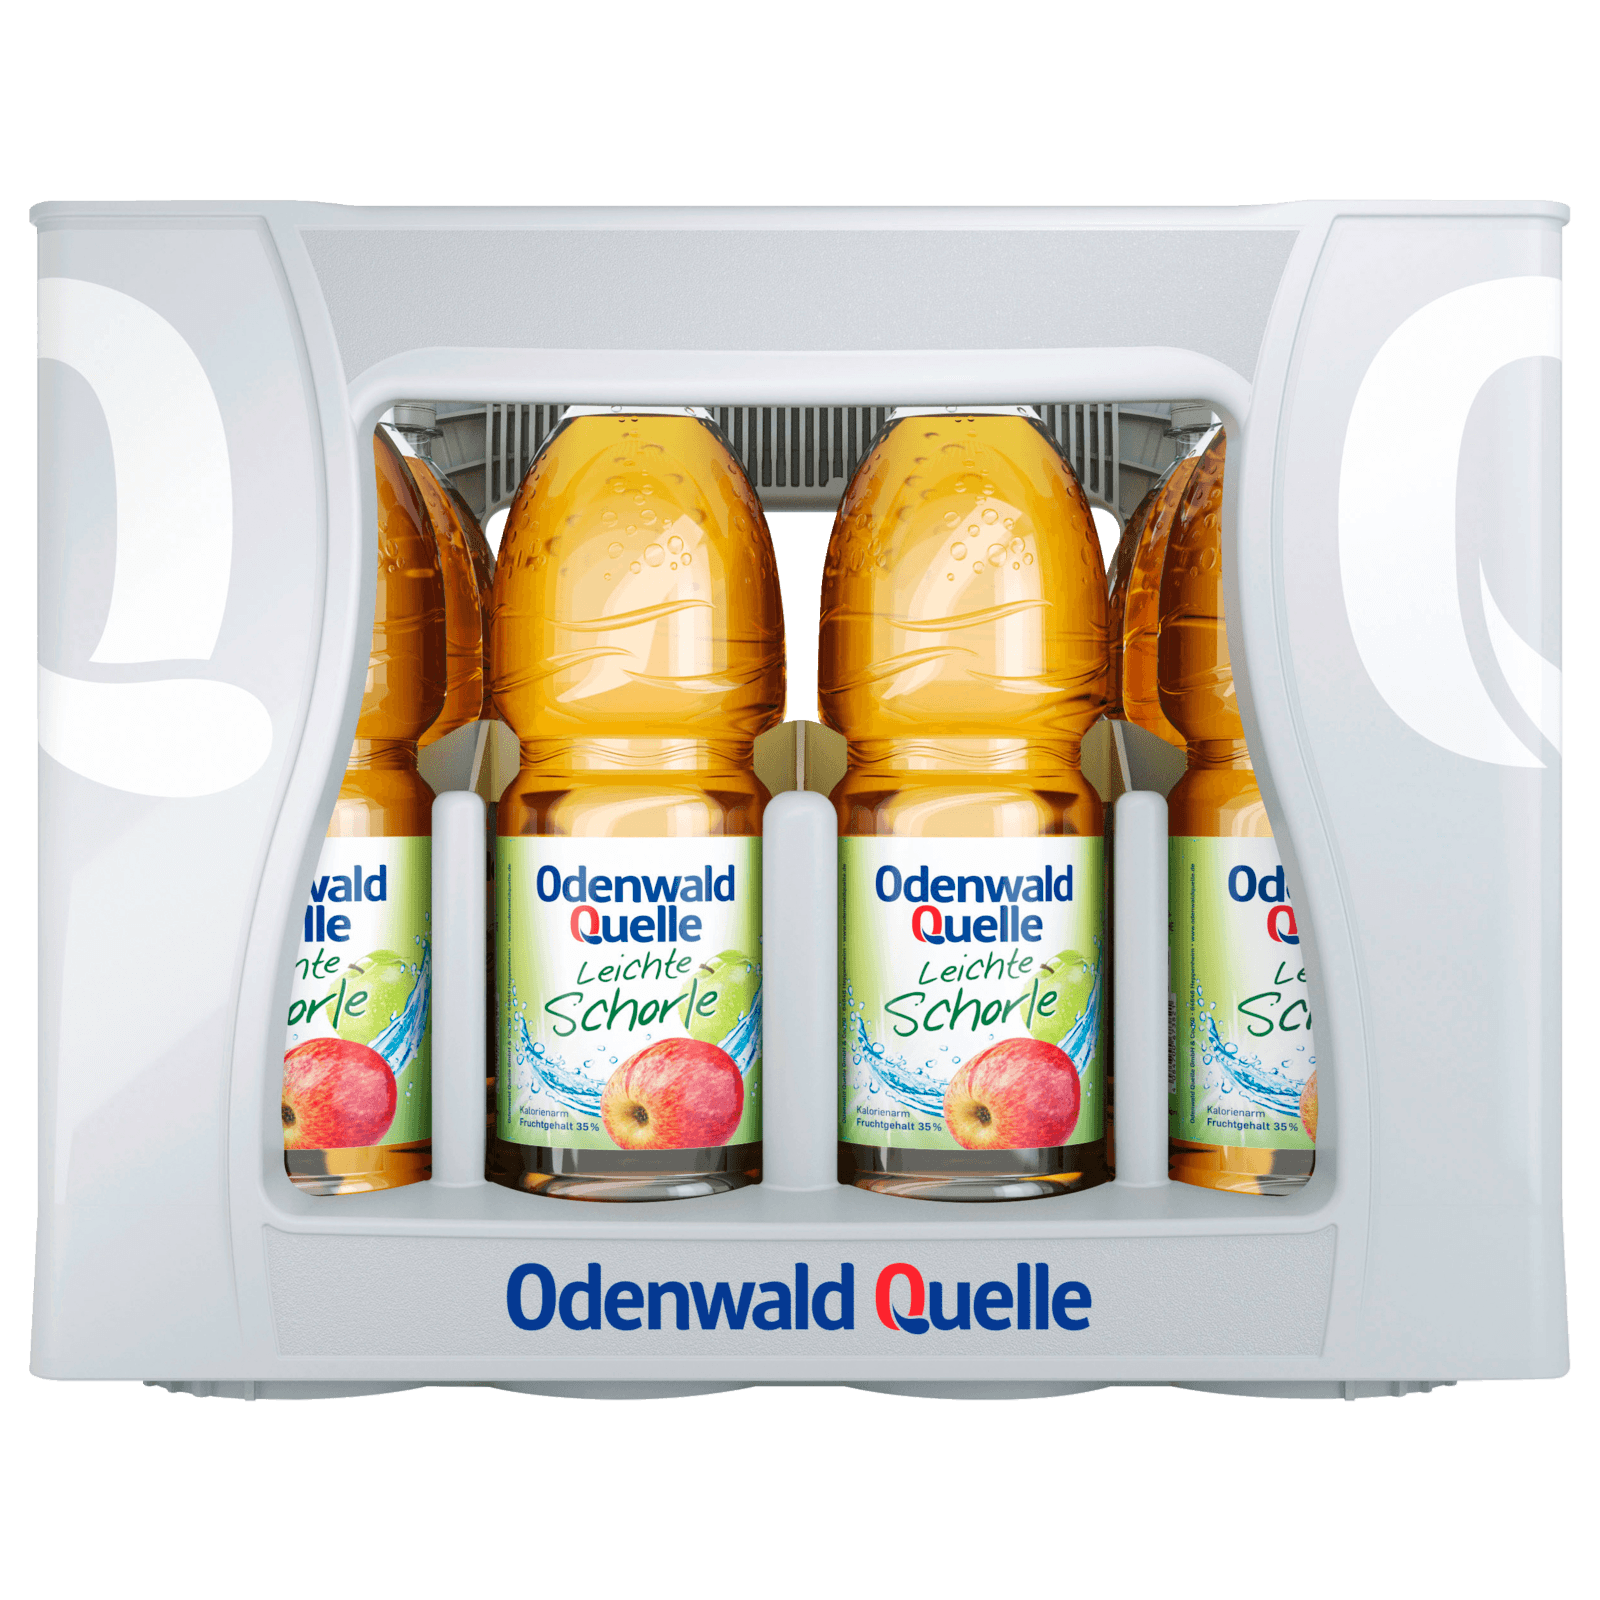 Odenwald Quelle Leichte Schorle bestellen! online Apfel bei 12x1l REWE